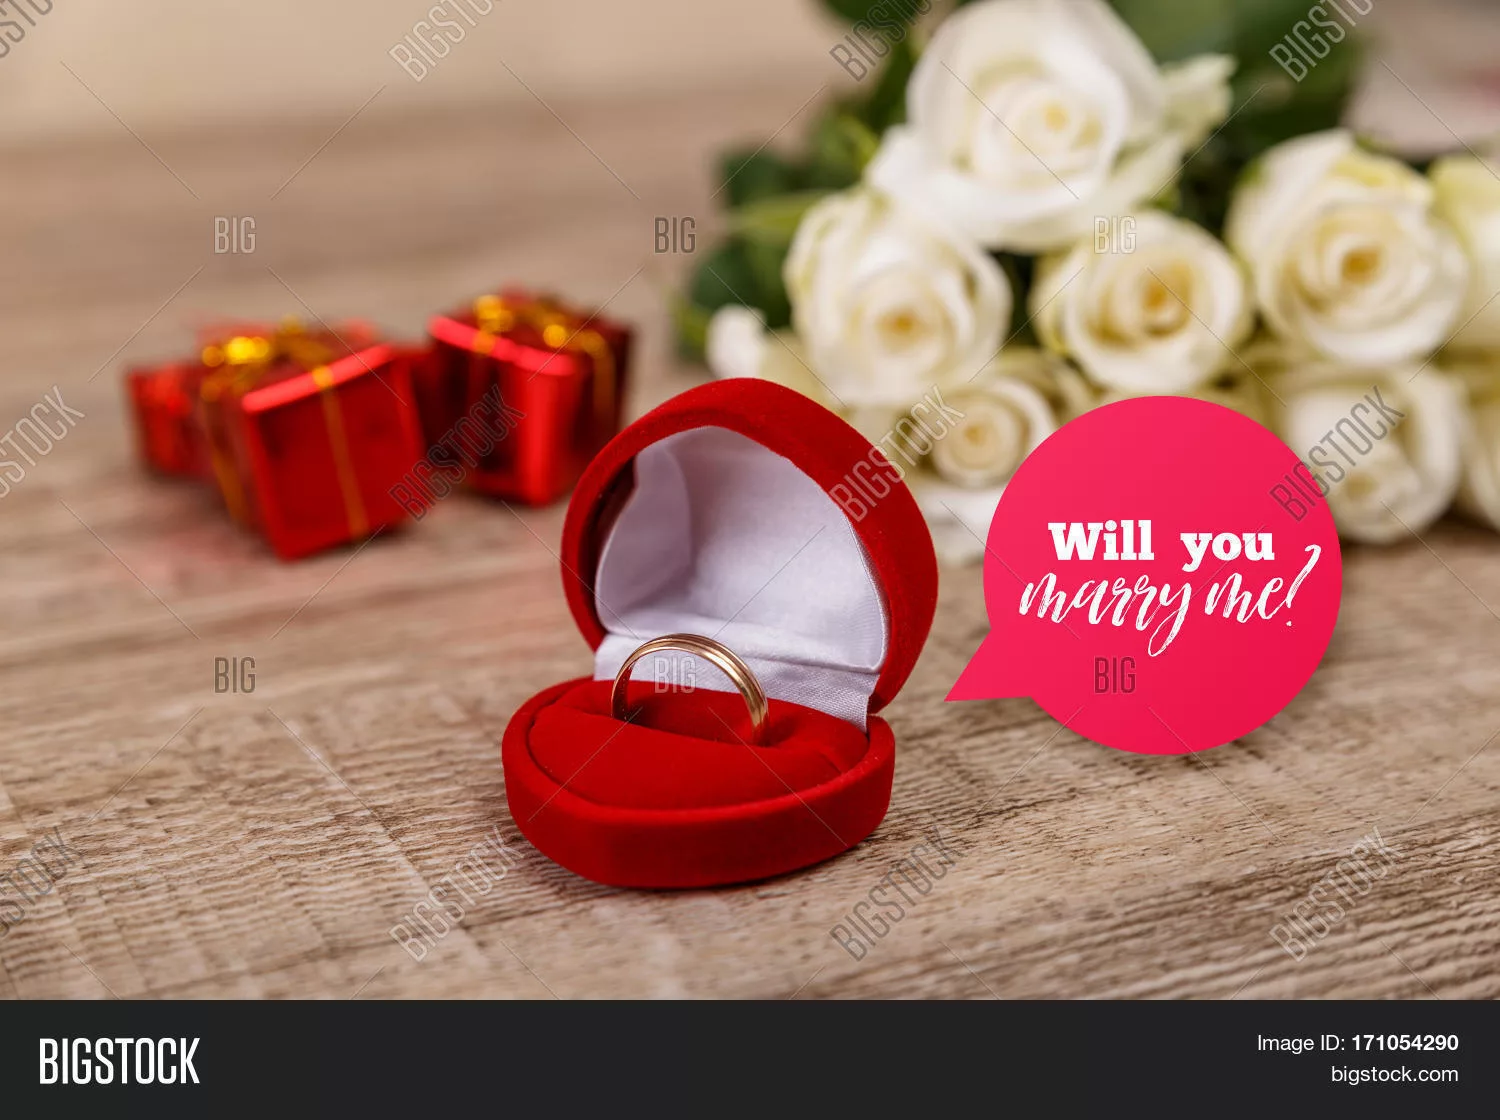 Фото Красивое предложение выйти замуж #40